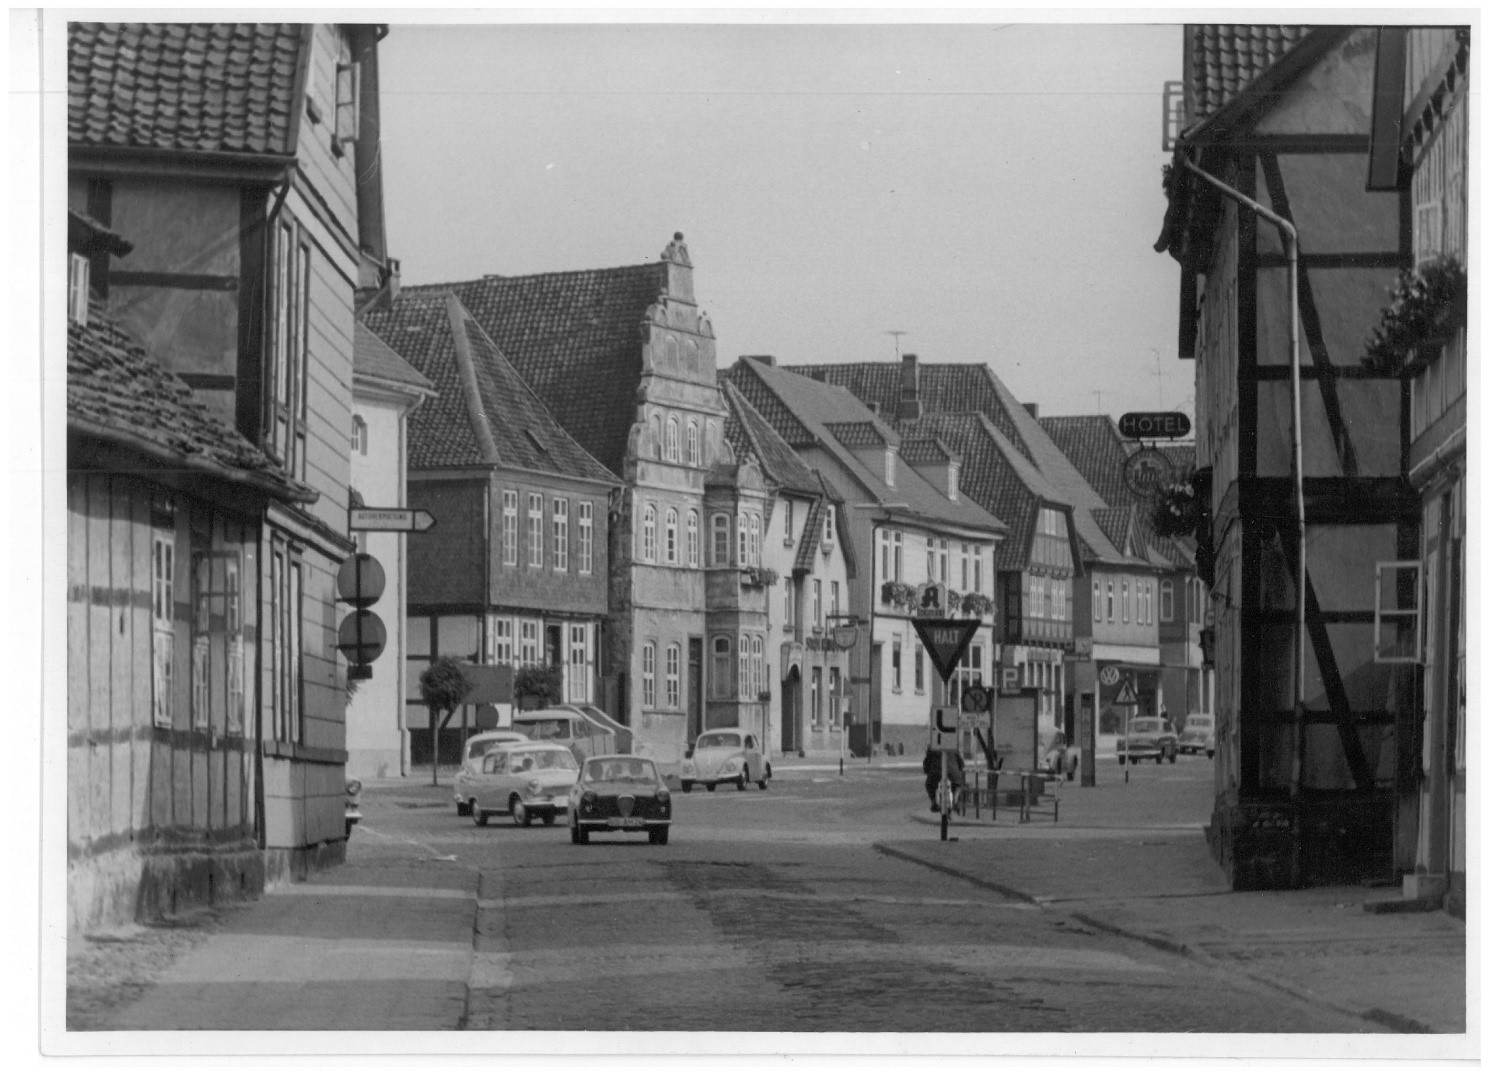 (c) Stadtarchiv Gifhorn, Ecke Cardenap / Torstraße mit Blick auf den Steinweg, 1961